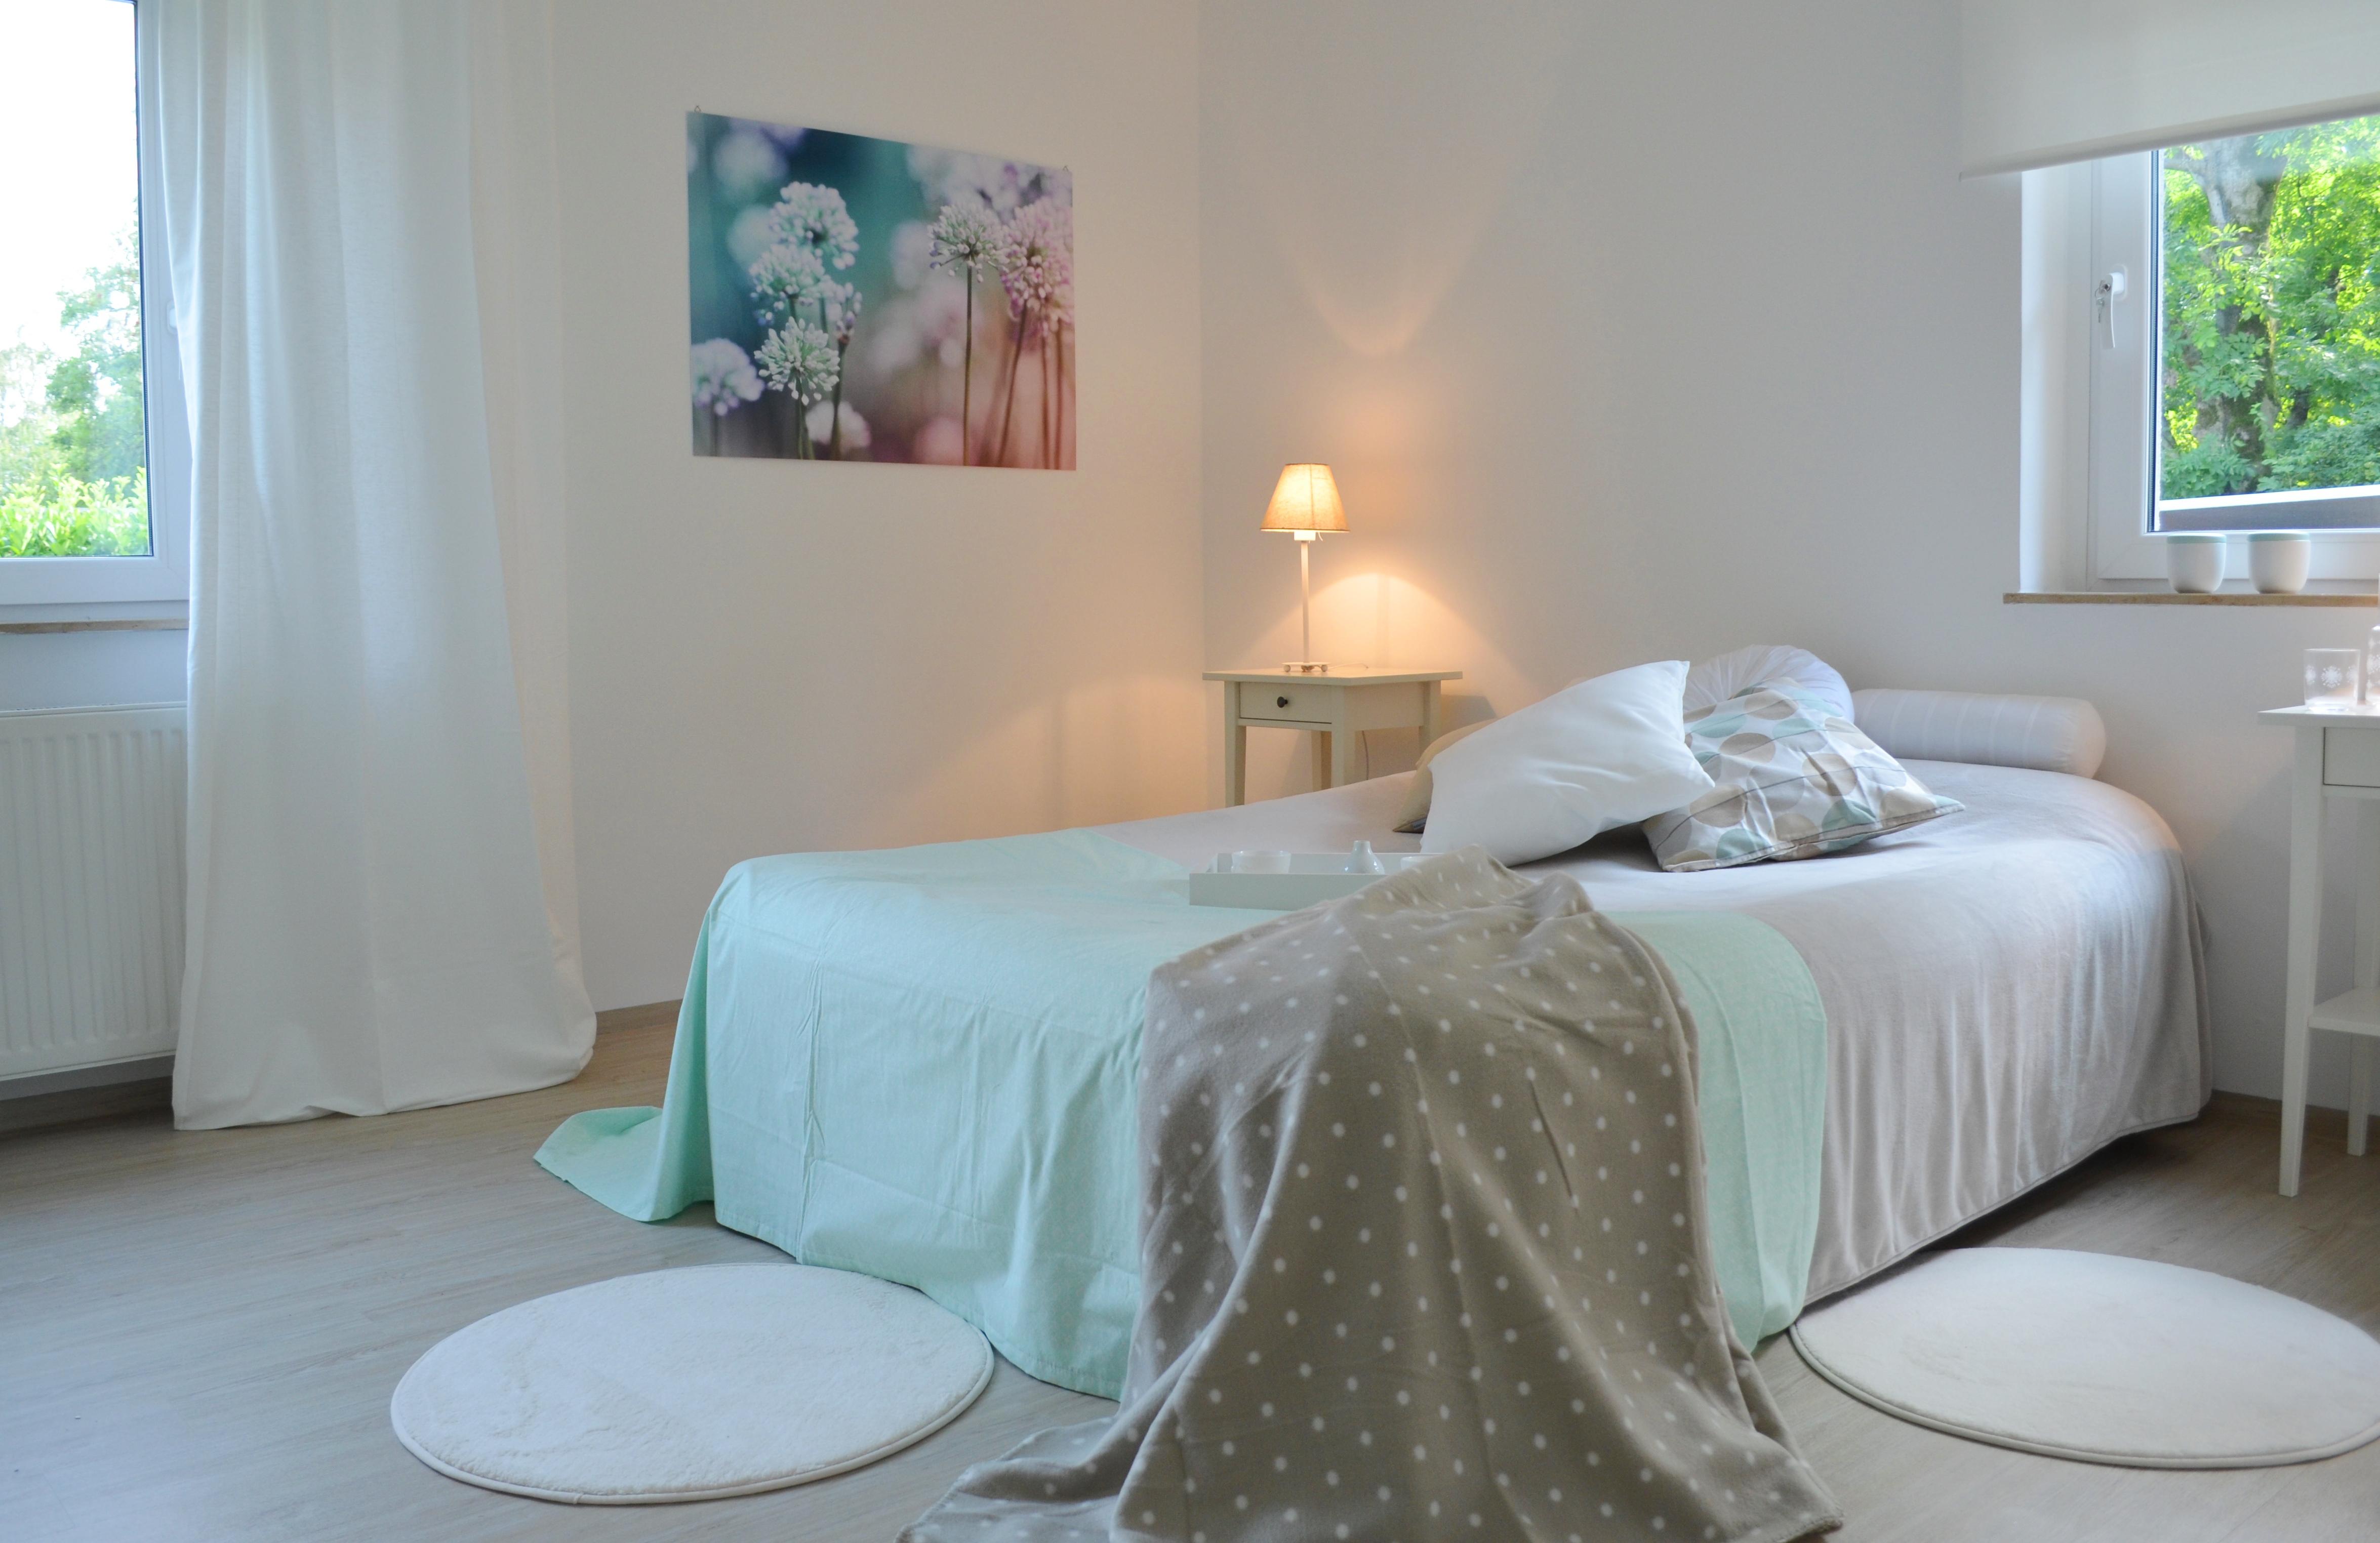 Dezentes Schlafzimmer #tagesdecke #bettvorleger ©feinrichten